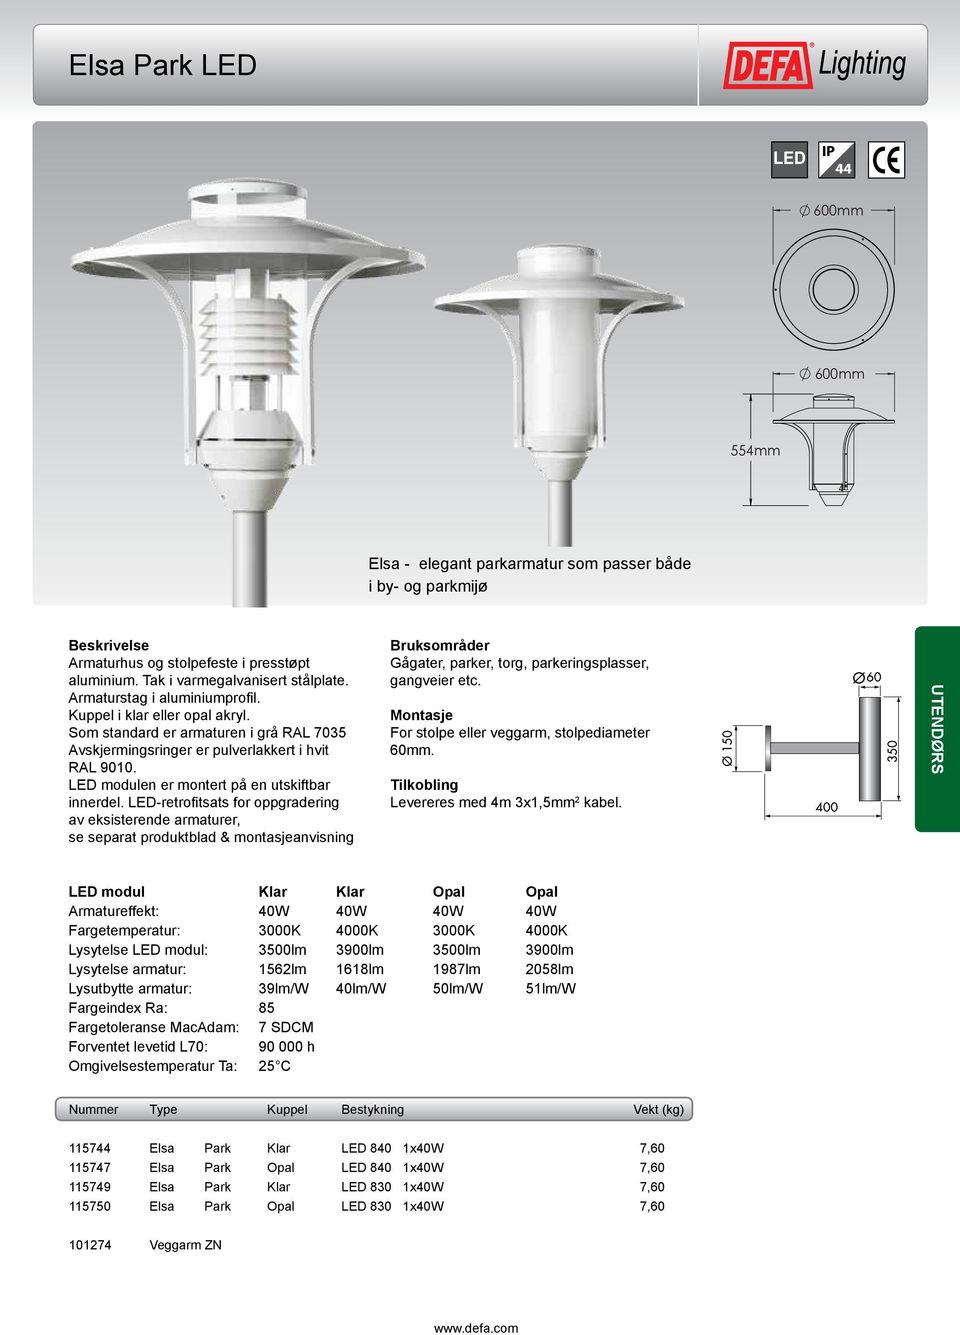 For stolpe eller veggarm, stolpediameter 60mm. Levereres med 4m 3x1,5mm 2 kabel.